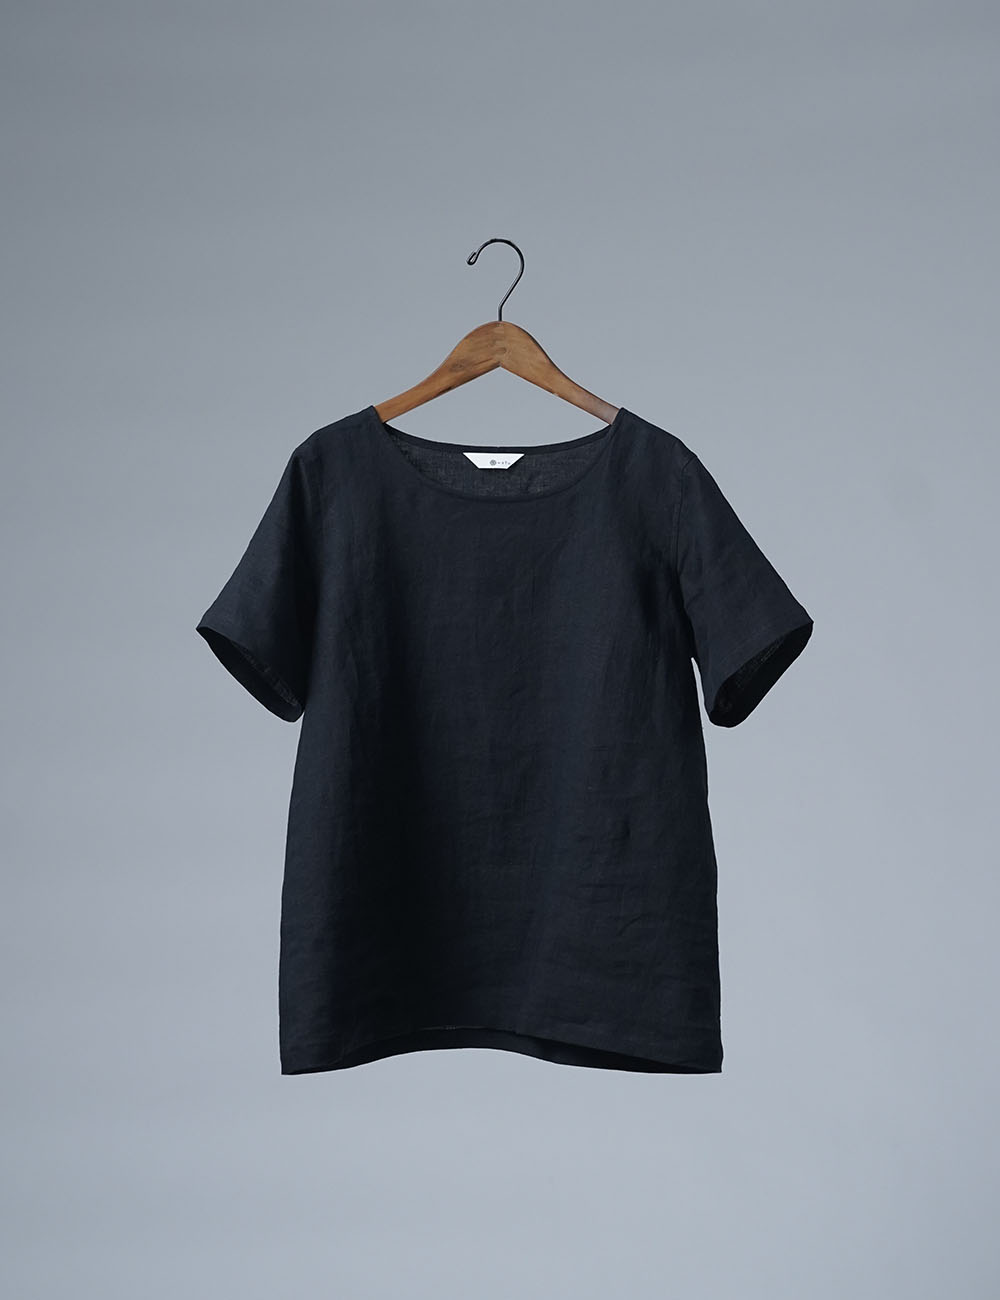 【wafu】ふわっと 軽くやさしい 雅亜麻 Linen Top リネンTシャツ インナー にも / 黒色 p015a-bck1